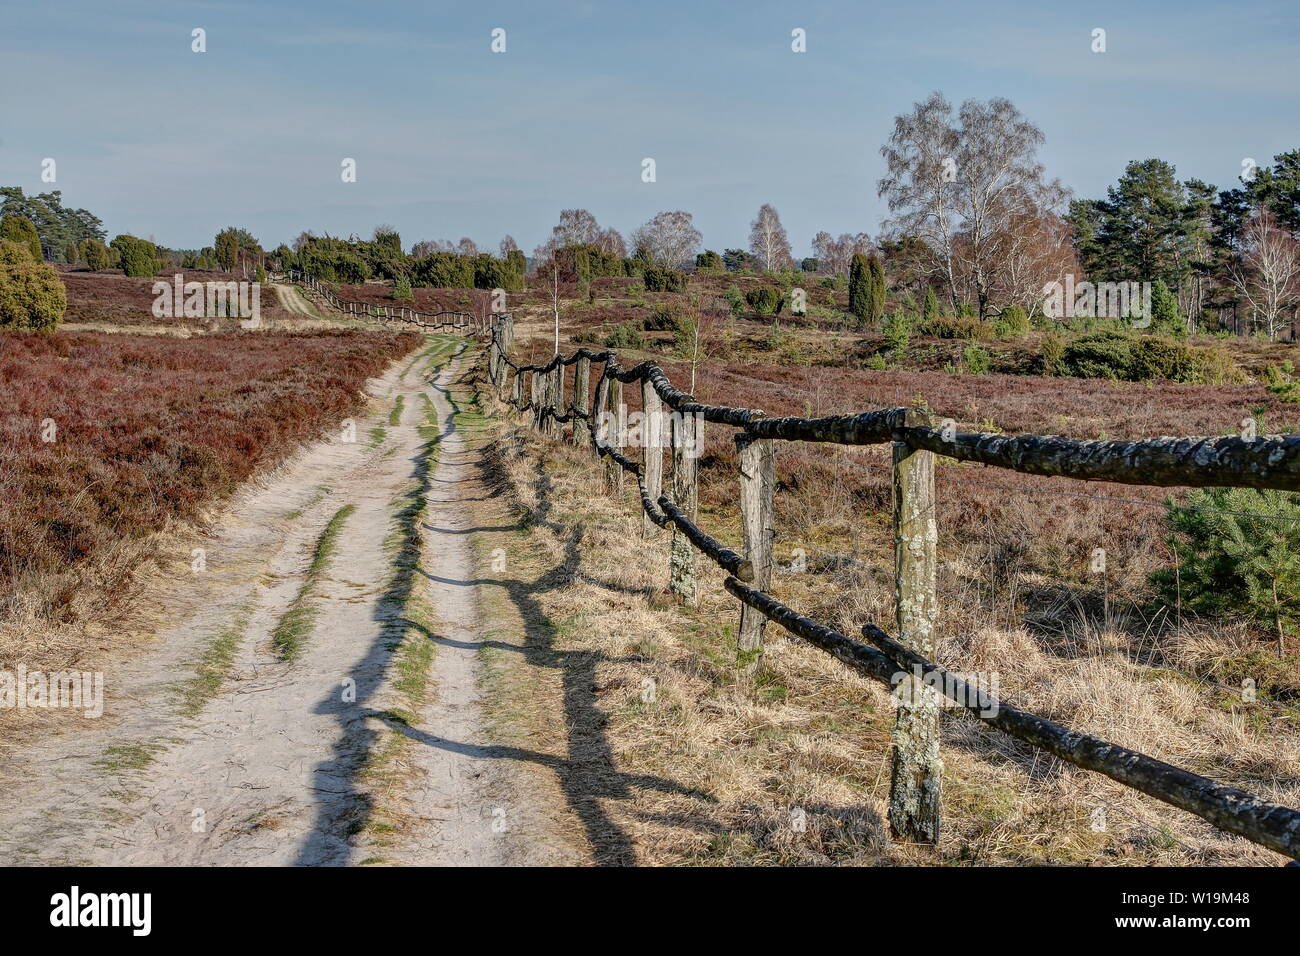 Le long de la old weathered barrière en bois mène le sentier apparemment infinis dans la réserve naturelle. Luenburger Banque D'Images